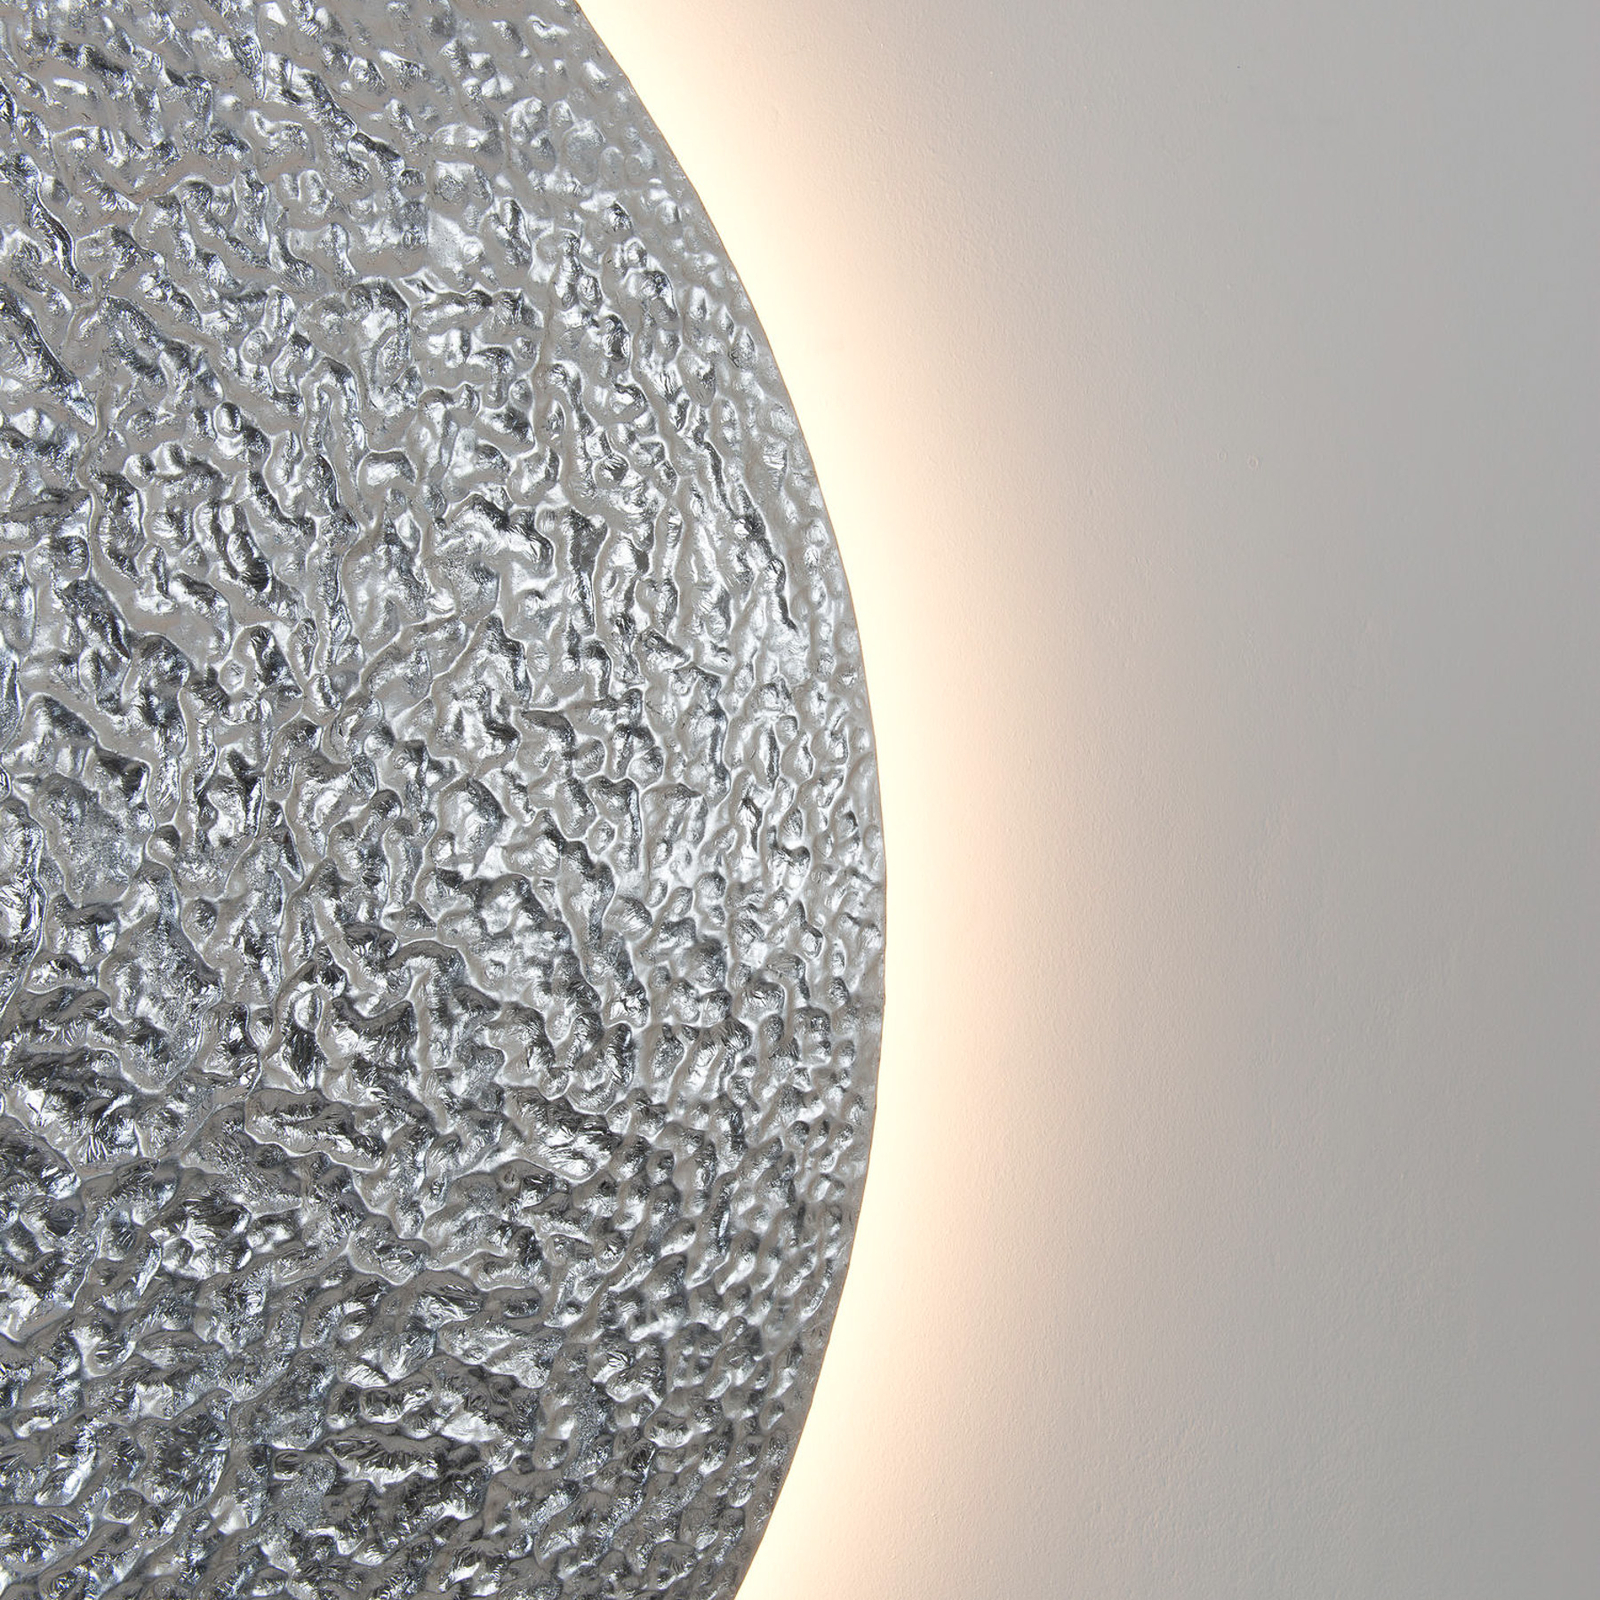 LED wandlamp Meteor, zilverkleurig, Ø 100 cm, ijzer